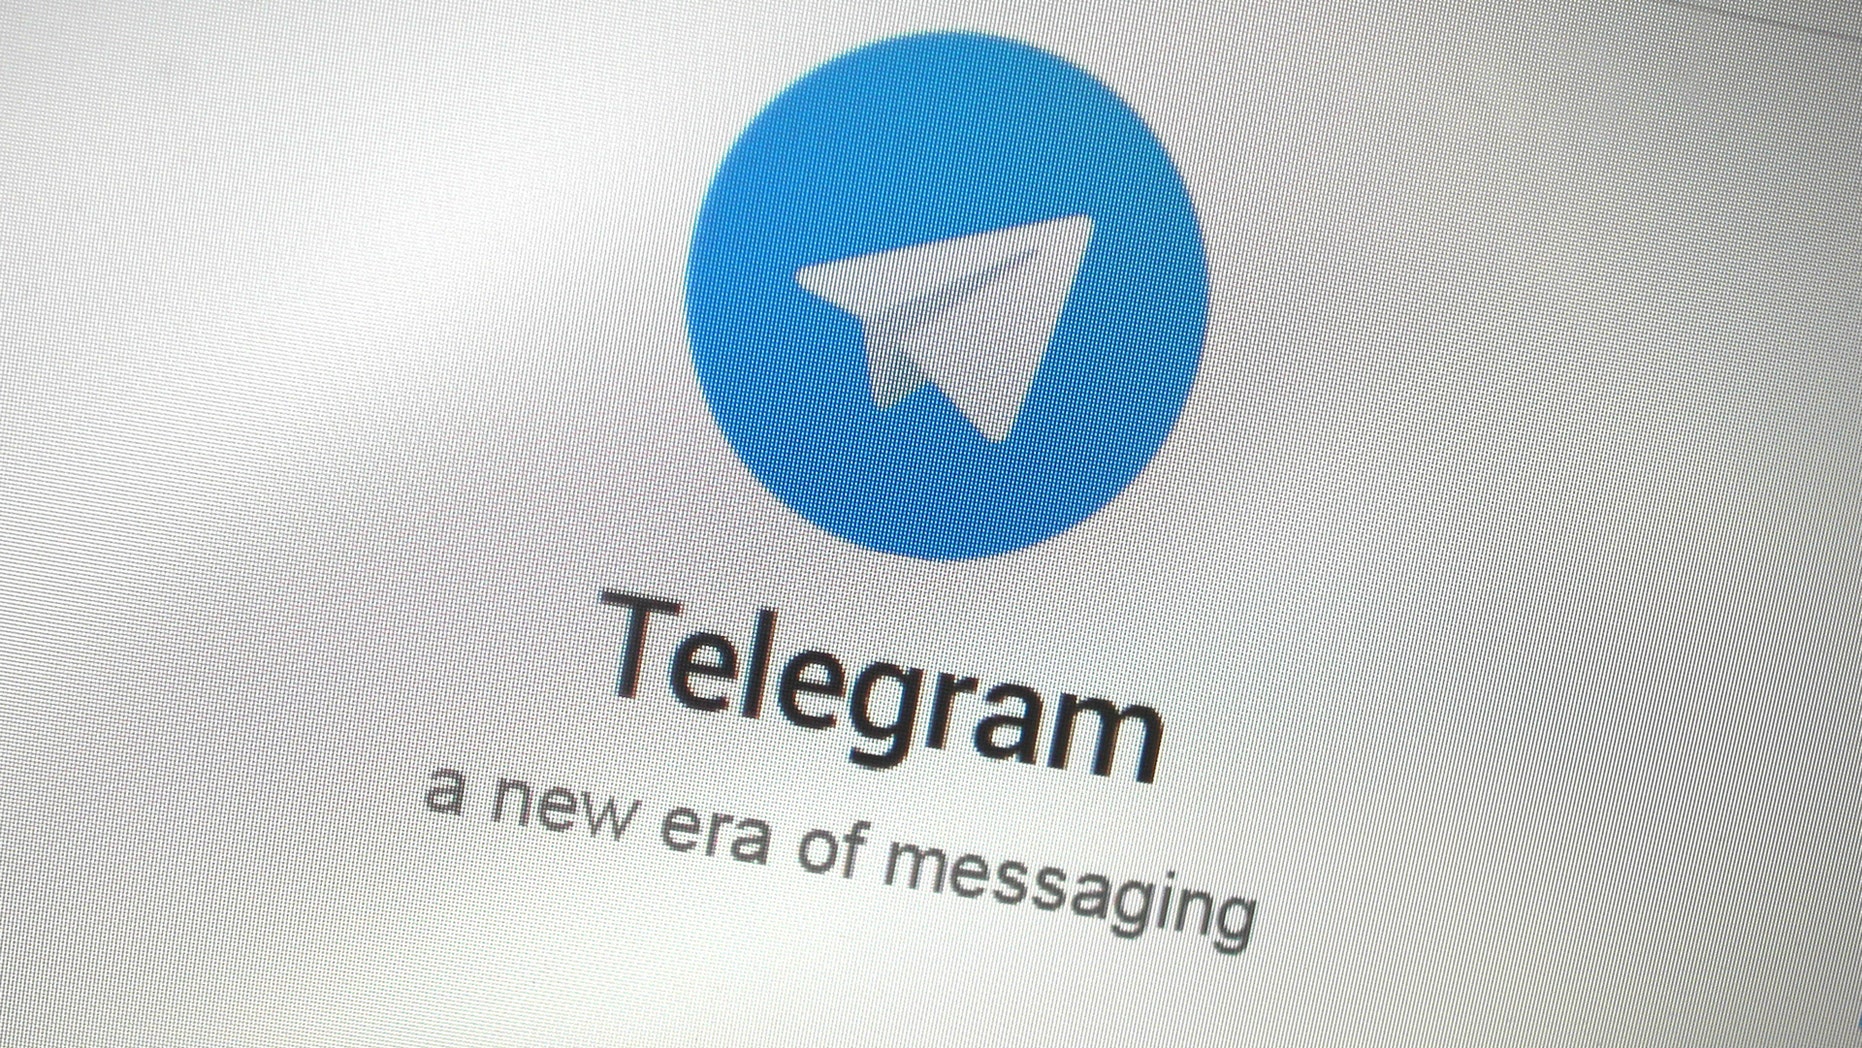 new update for telegram